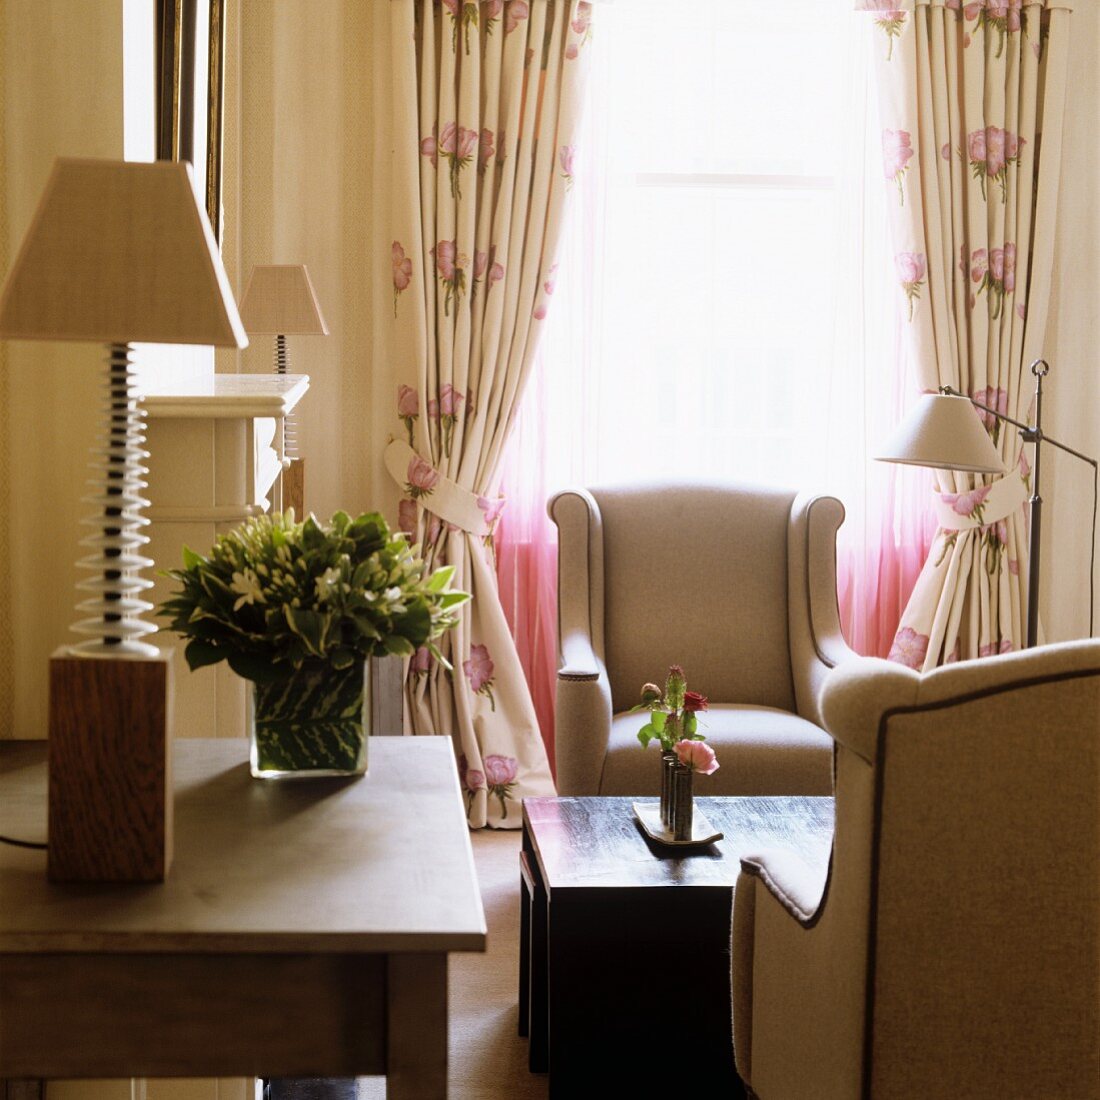 Tischlampe auf Tisch neben Loungeecke - Elegante Sessel und Kaffeetisch vor Fenster mit gerafften Vorhängen